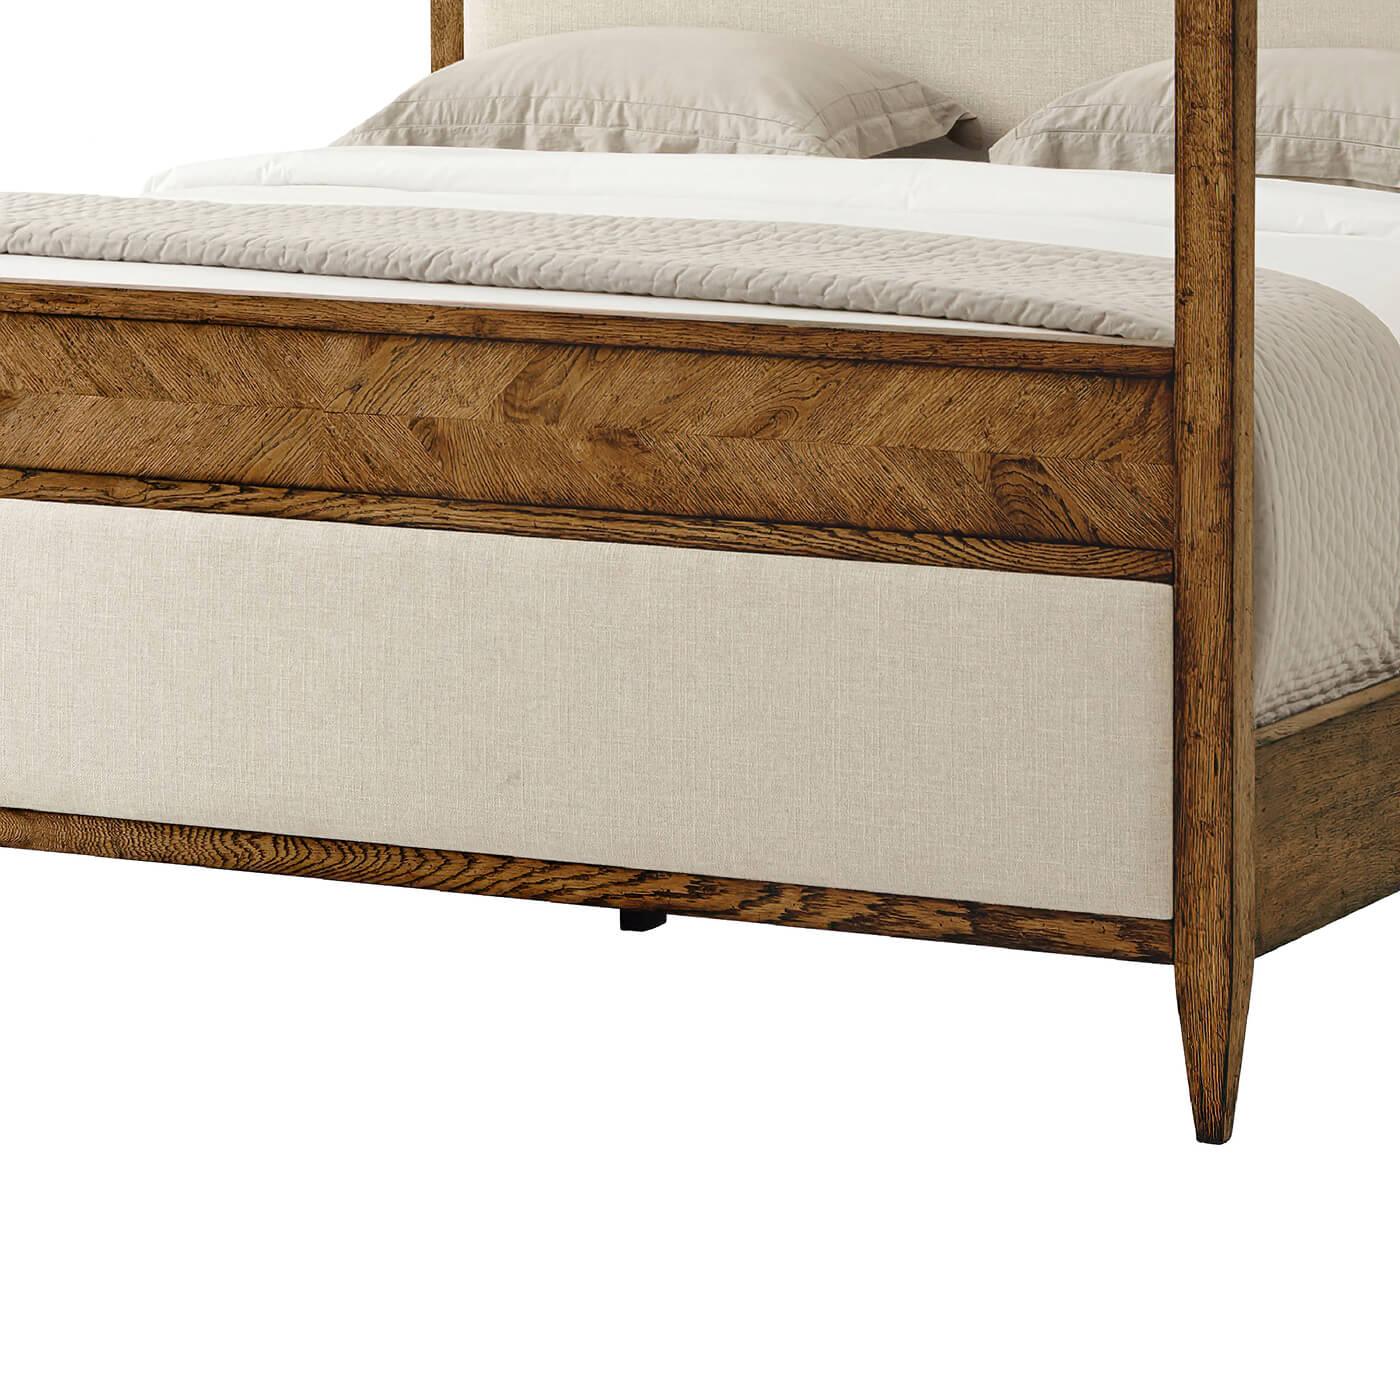 Ein modernes, rustikales Himmelbett California King aus Eichenholz in der Farbe Dusk. Dieses wunderschön gestaltete Bett besteht aus handgeschnitztem Eichenholz und gespiegeltem Fischgrätenparkett, das mit einem gepolsterten Paneel am Kopf- und